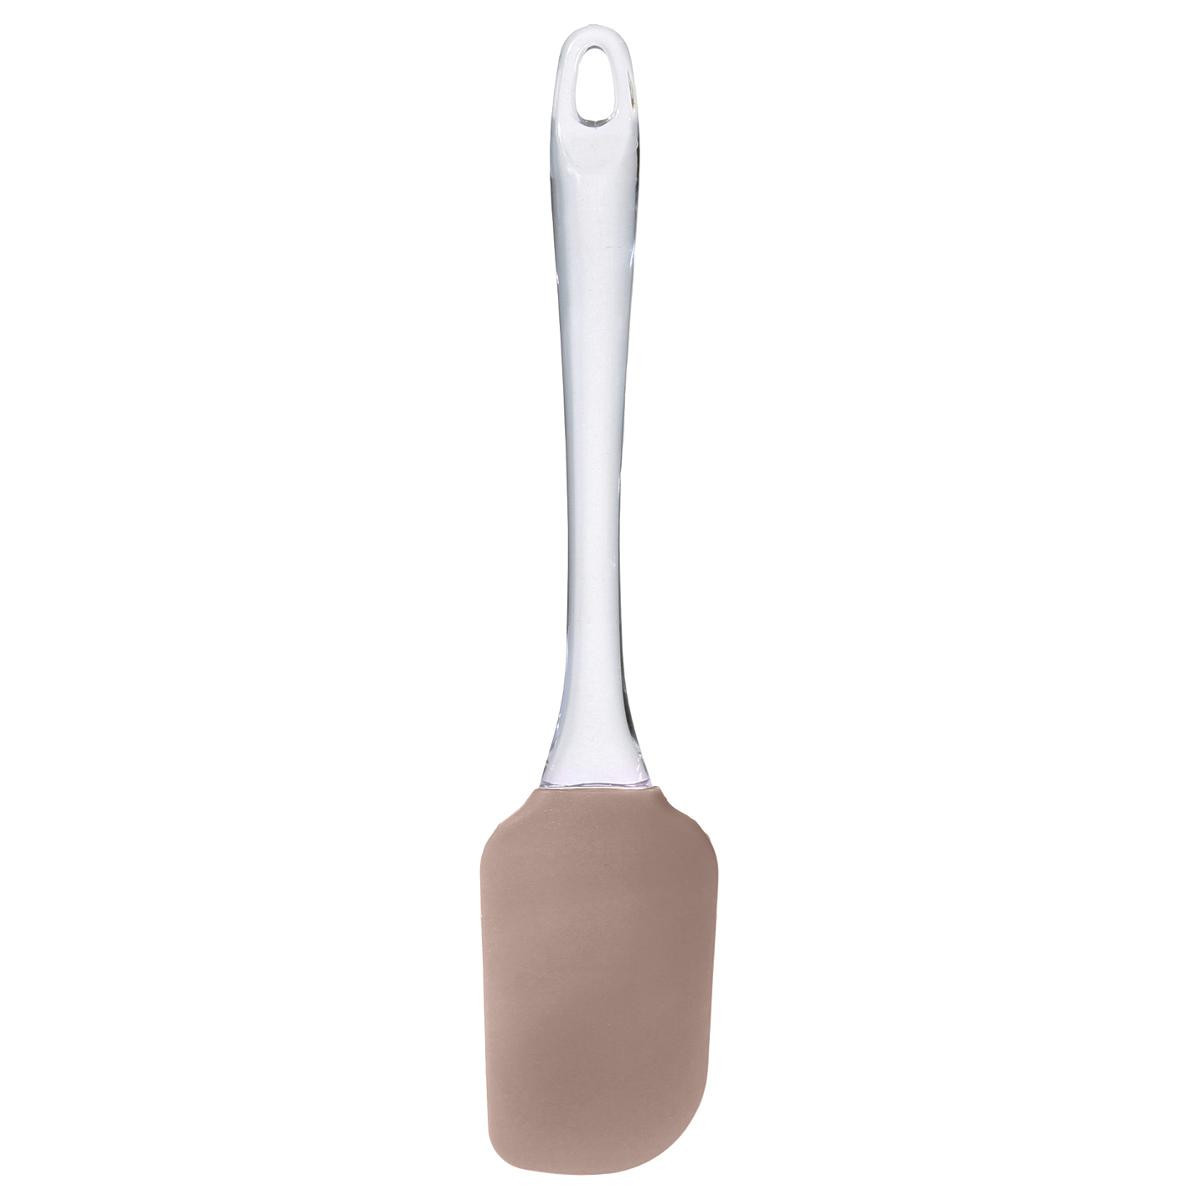 https://www.decomania.fr/539744-product_hd/spatule-maryse-en-silicone-ps.jpg